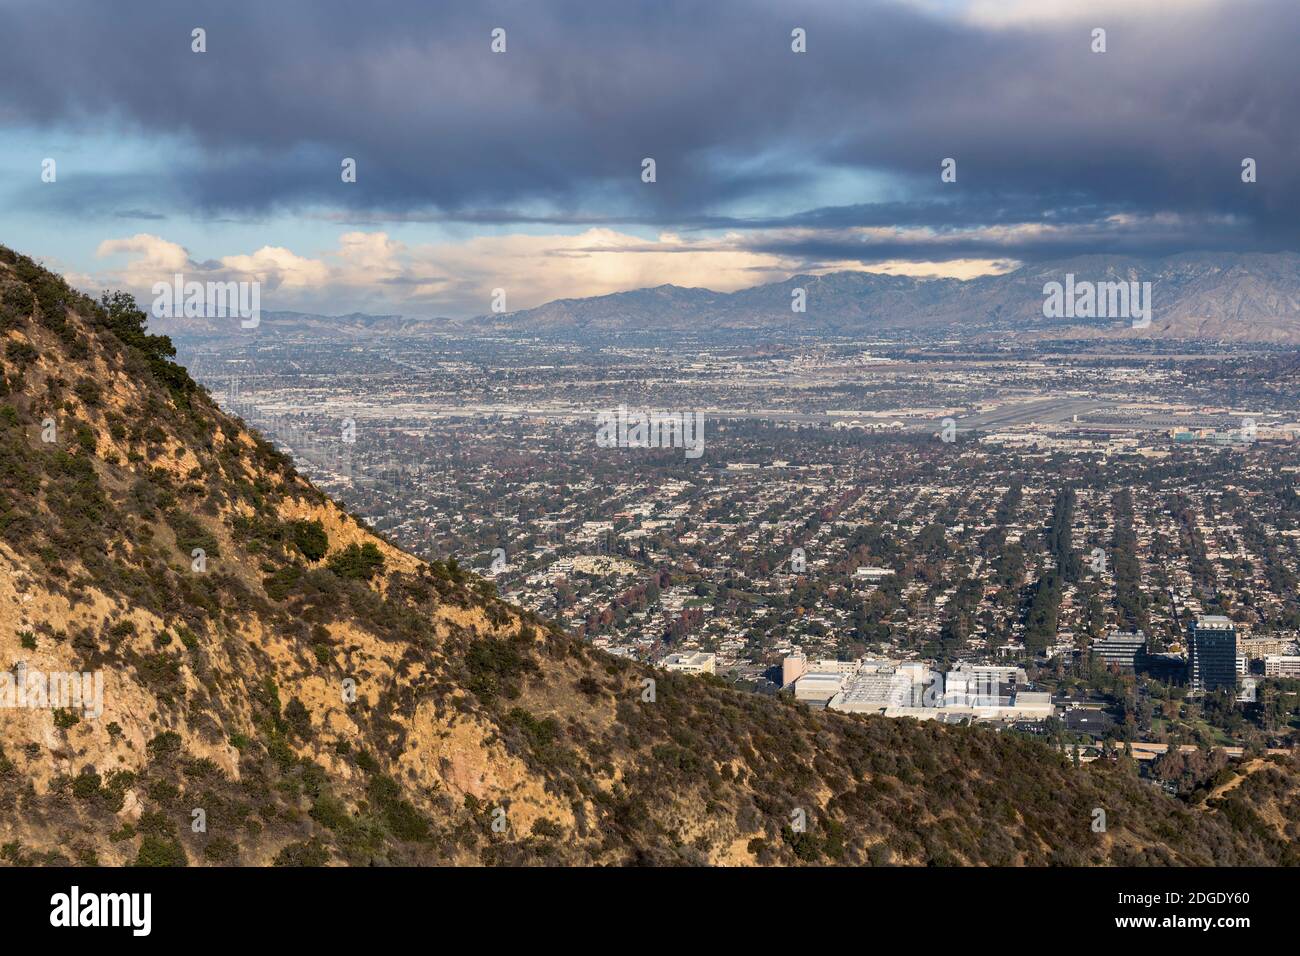 Blick auf Burbank mit Gewitterhimmel. Aufgenommen von einem Hügel im Griffith Park in Los Angeles, Kalifornien. Stockfoto